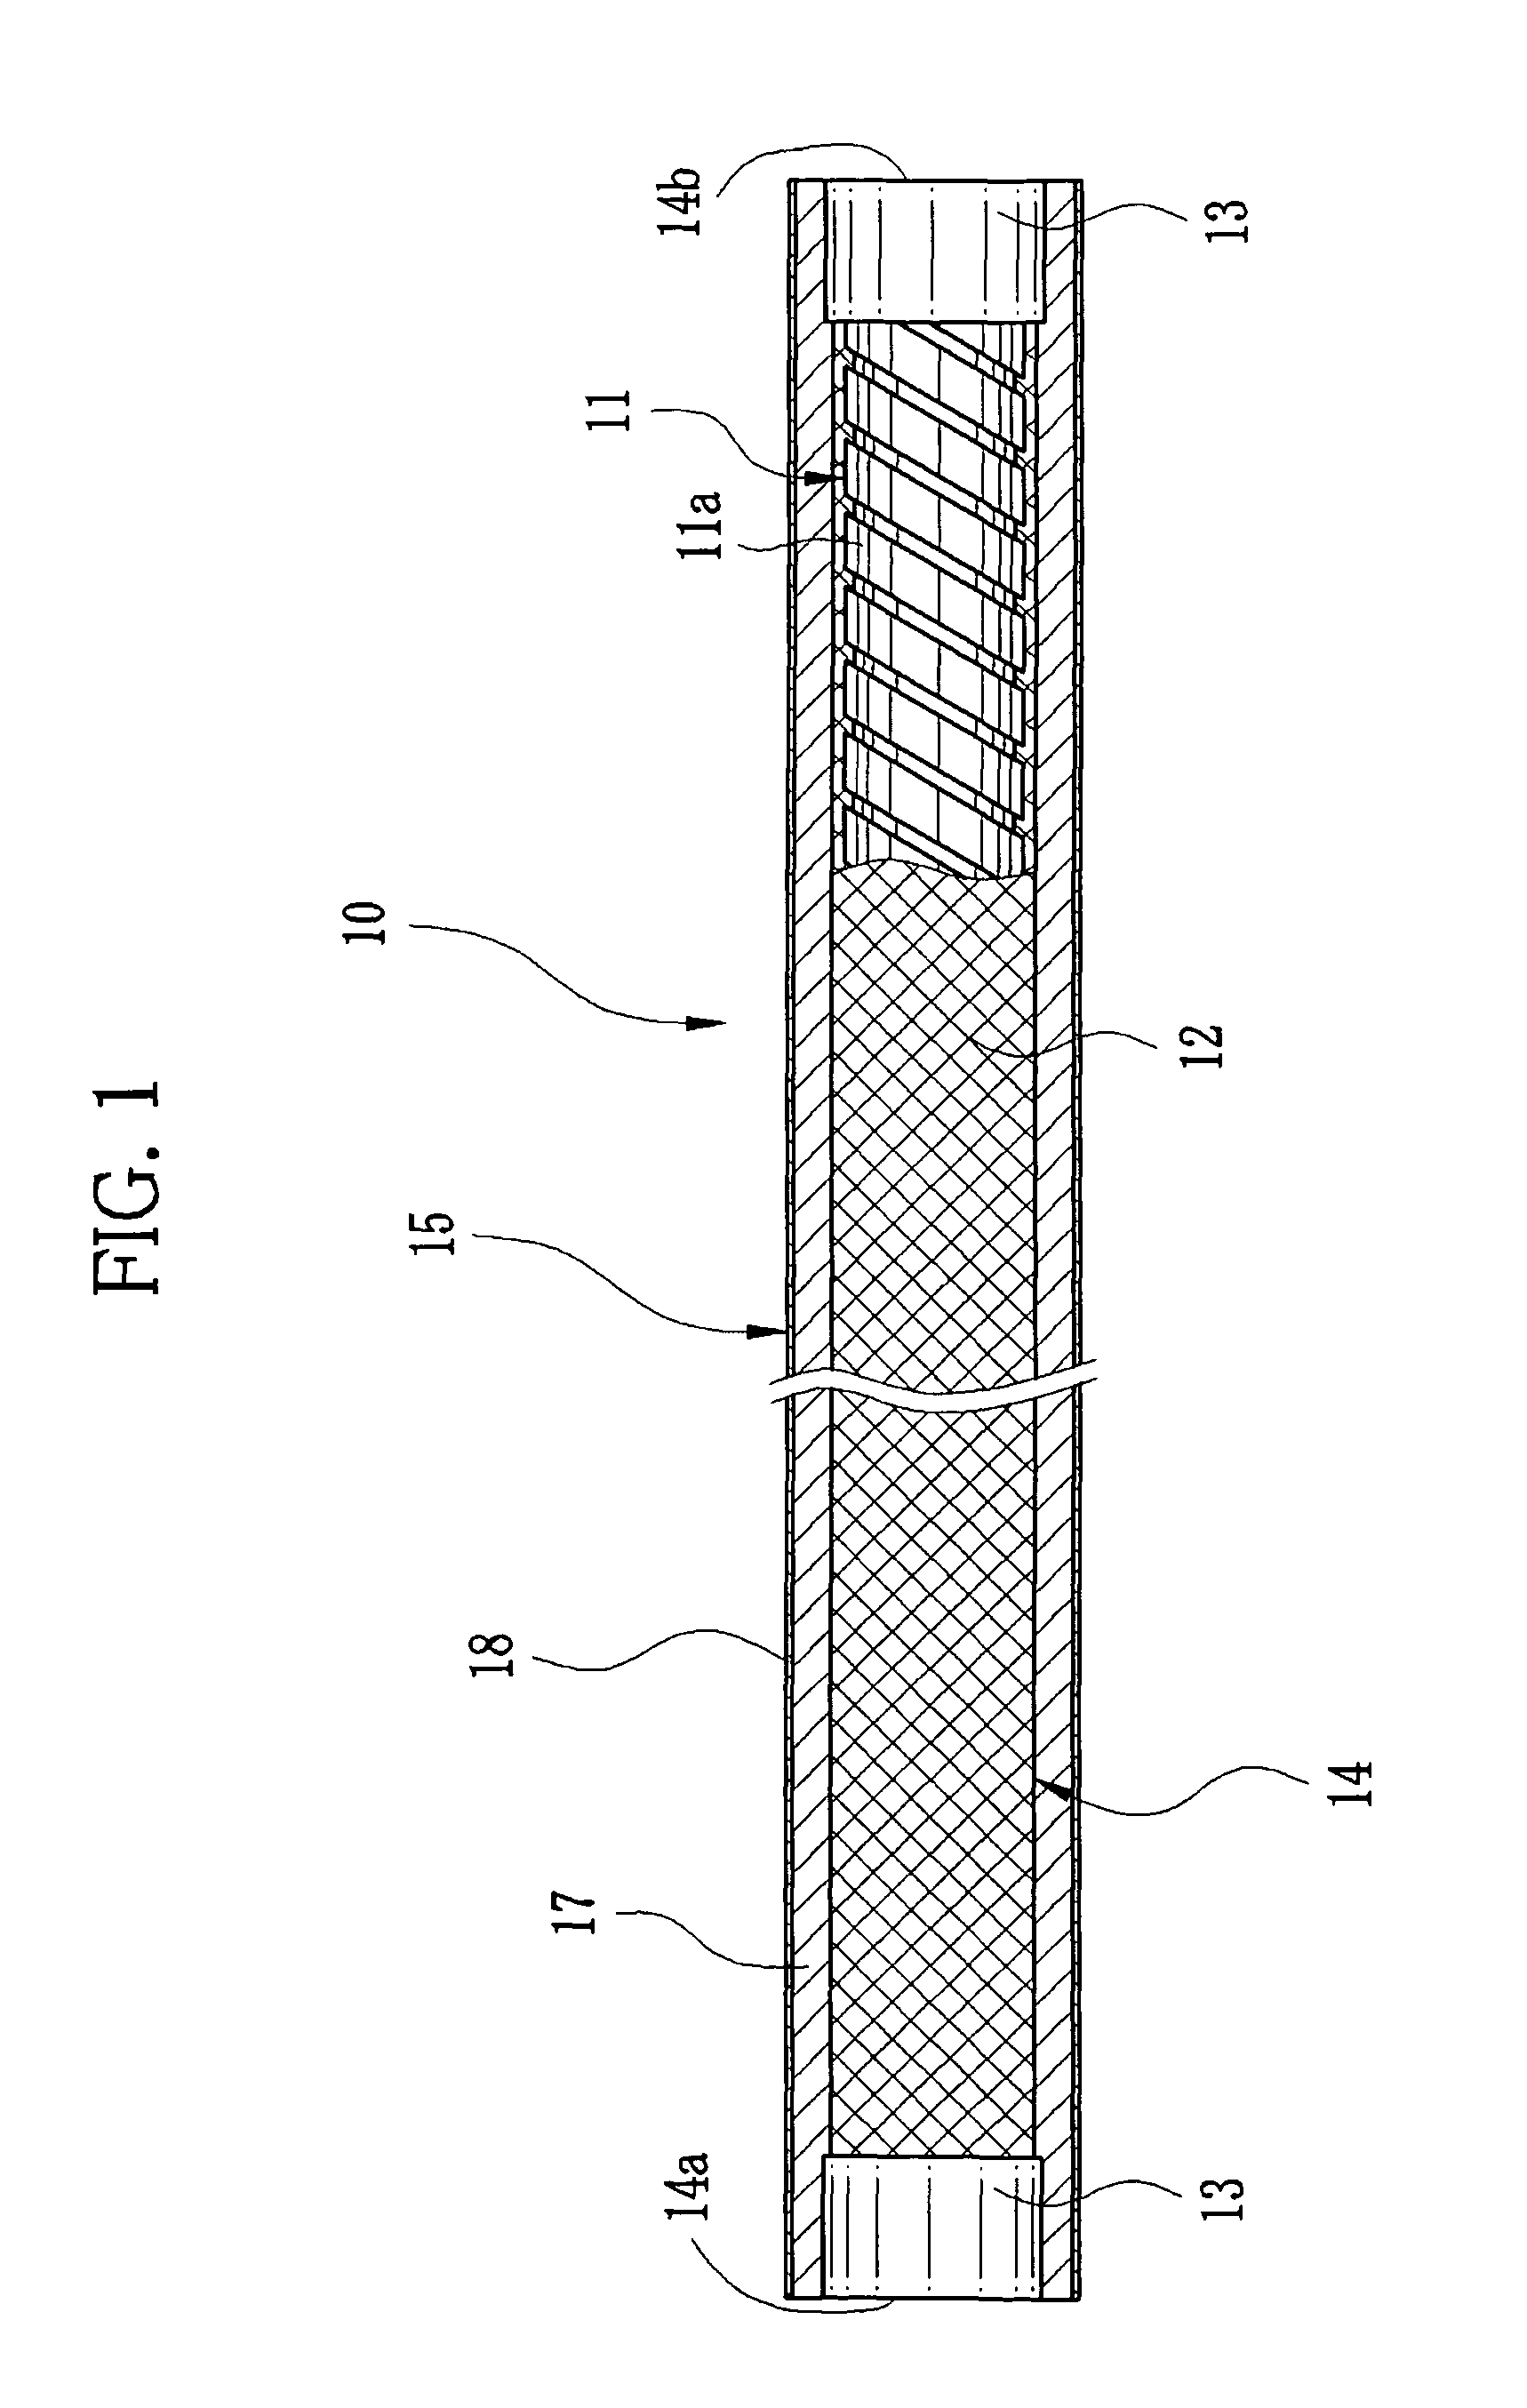 Method for repairing flexible tube